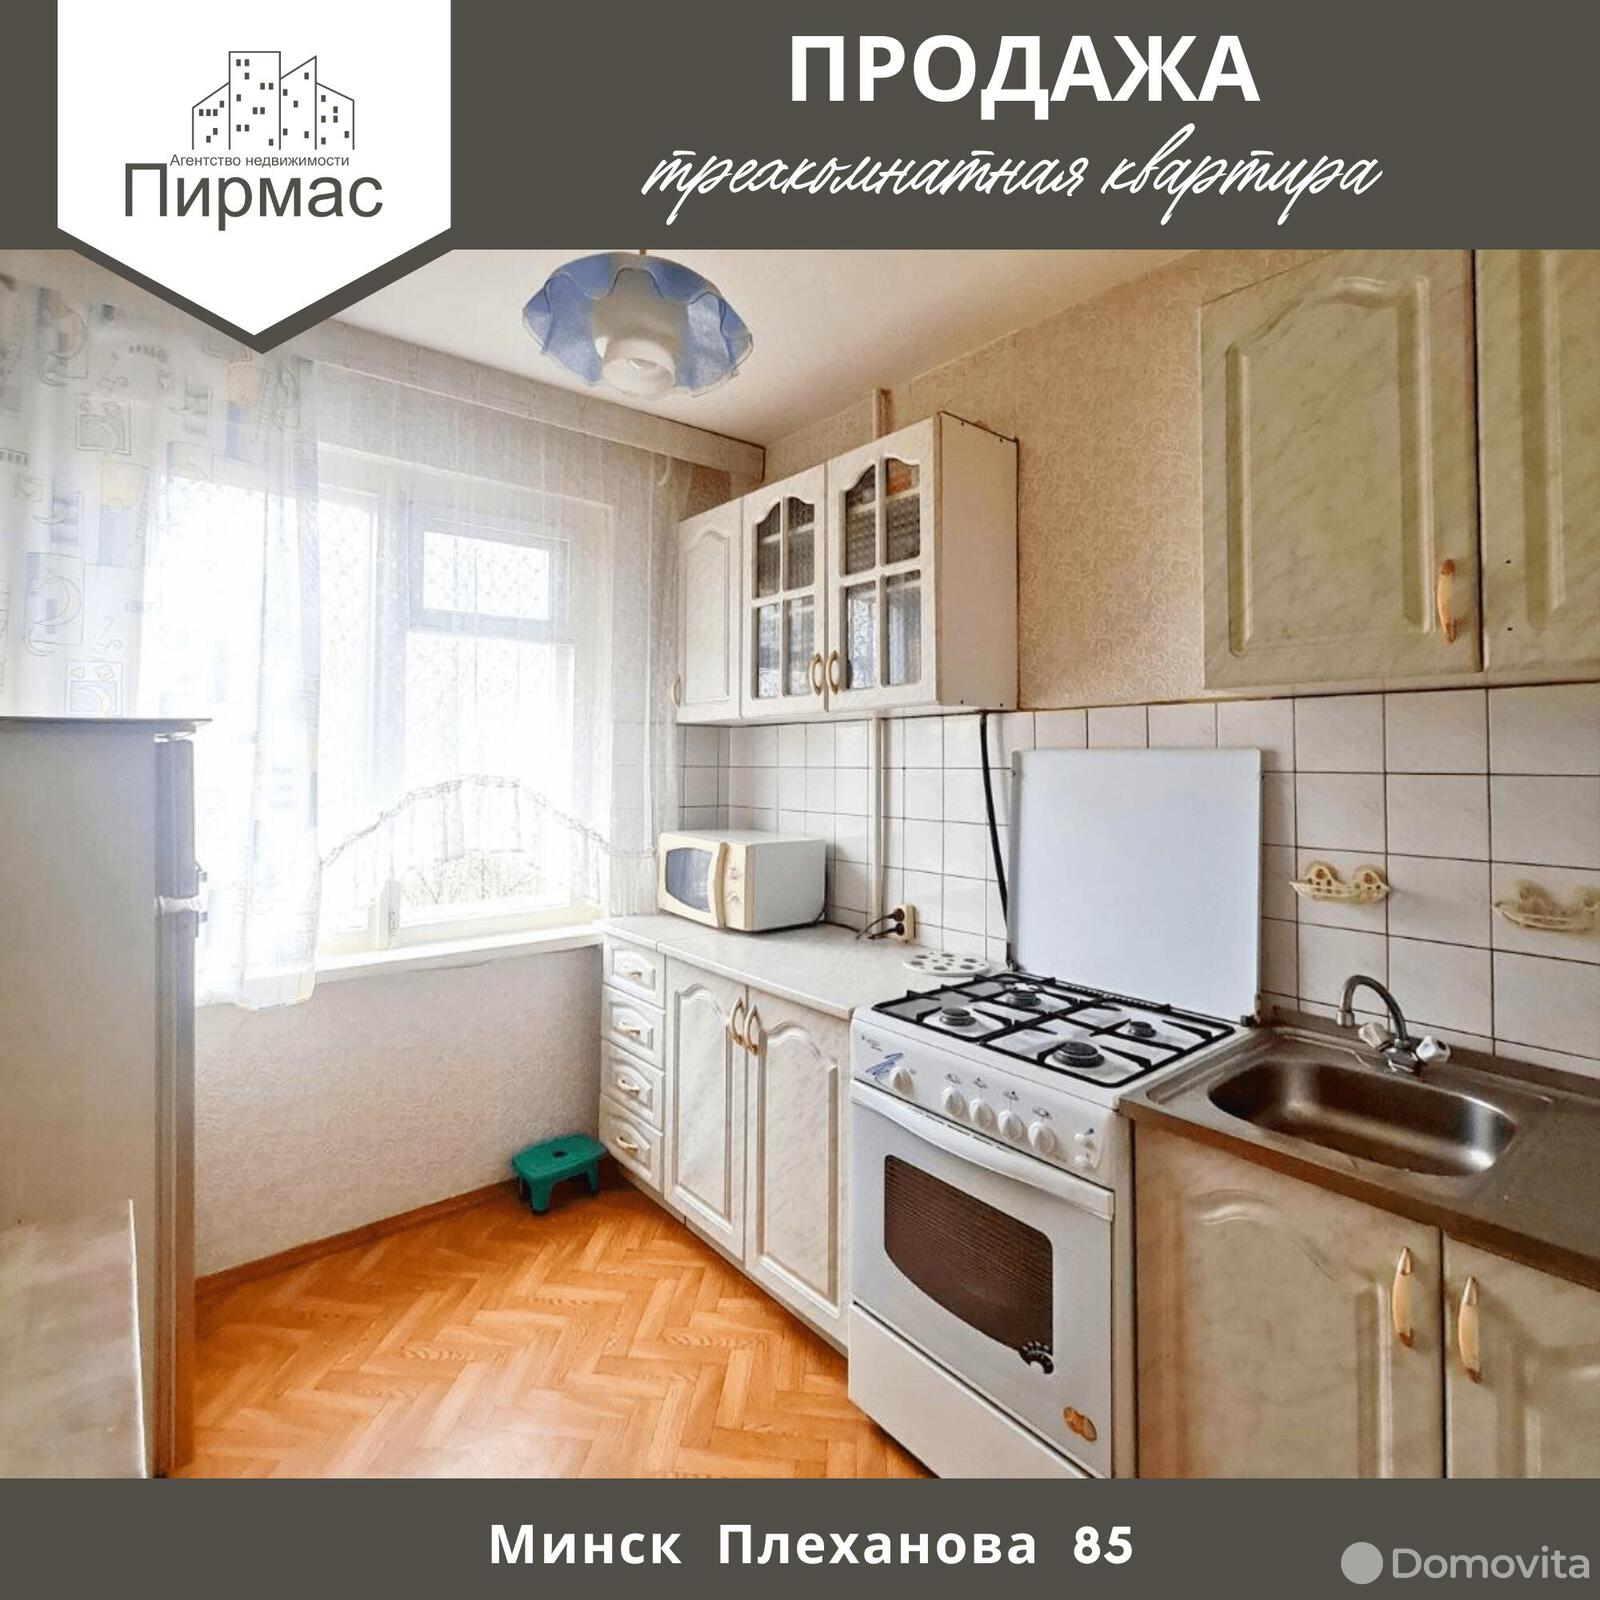 Стоимость продажи квартиры, Минск, ул. Плеханова, д. 85